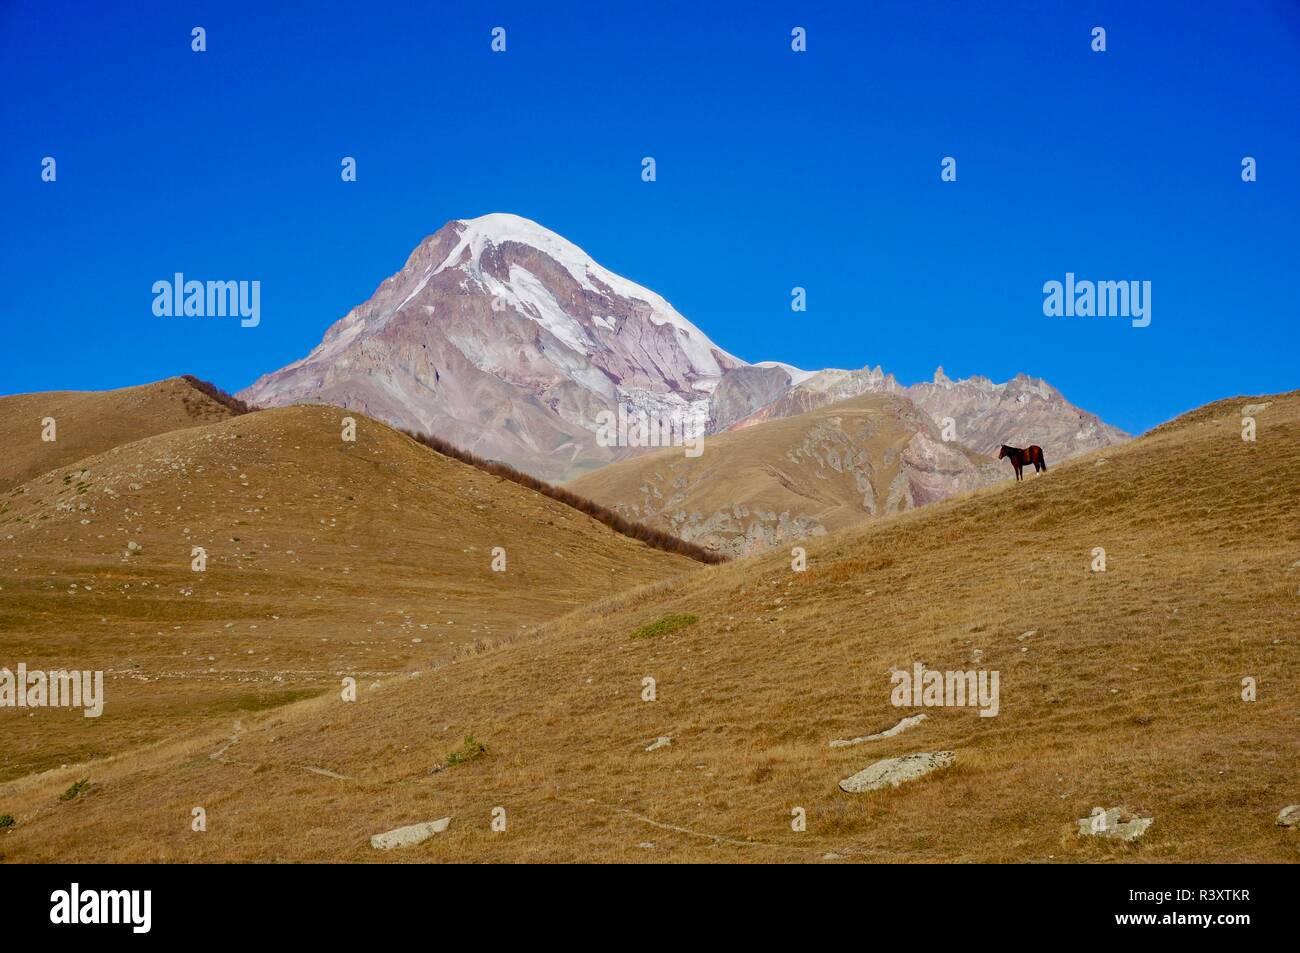 El caballo se detiene delante del Monte Kazbegi, en las montañas del Cáucaso de Georgia Foto de stock